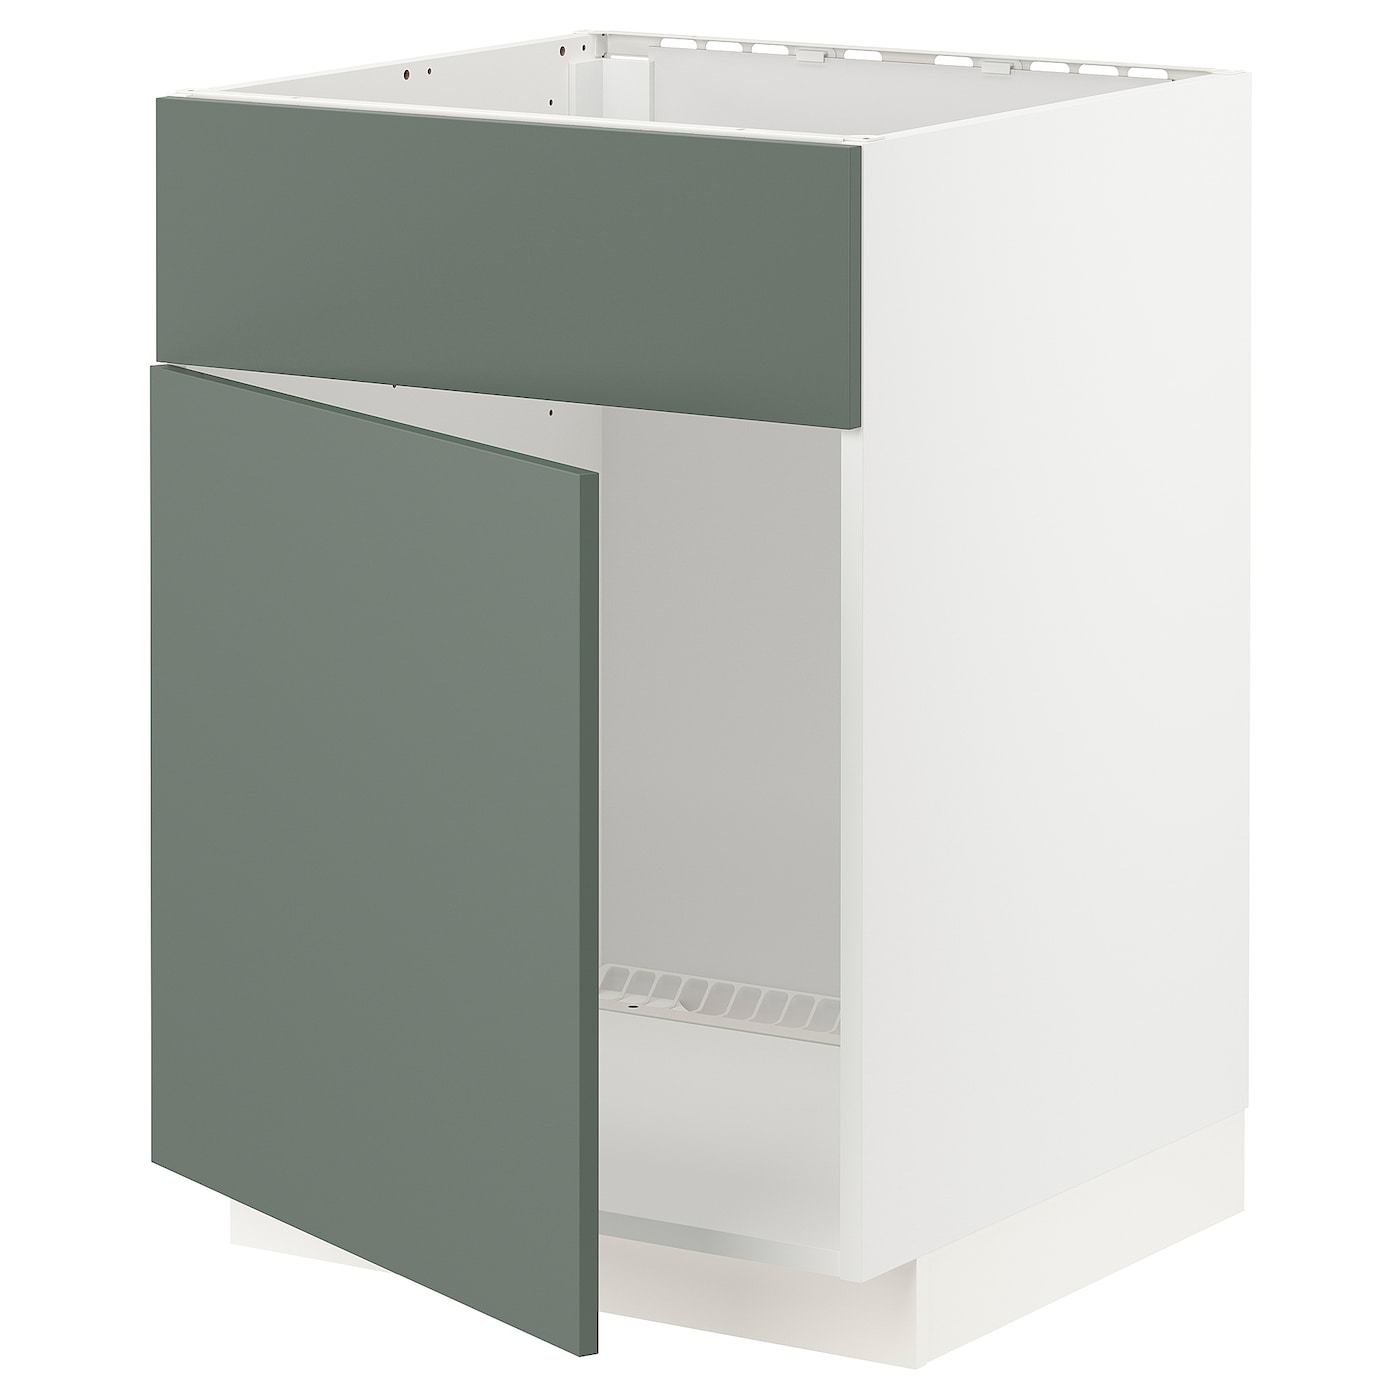 Напольный шкаф - IKEA METOD, 88x62x60см, белый/серо-зеленый, МЕТОД ИКЕА